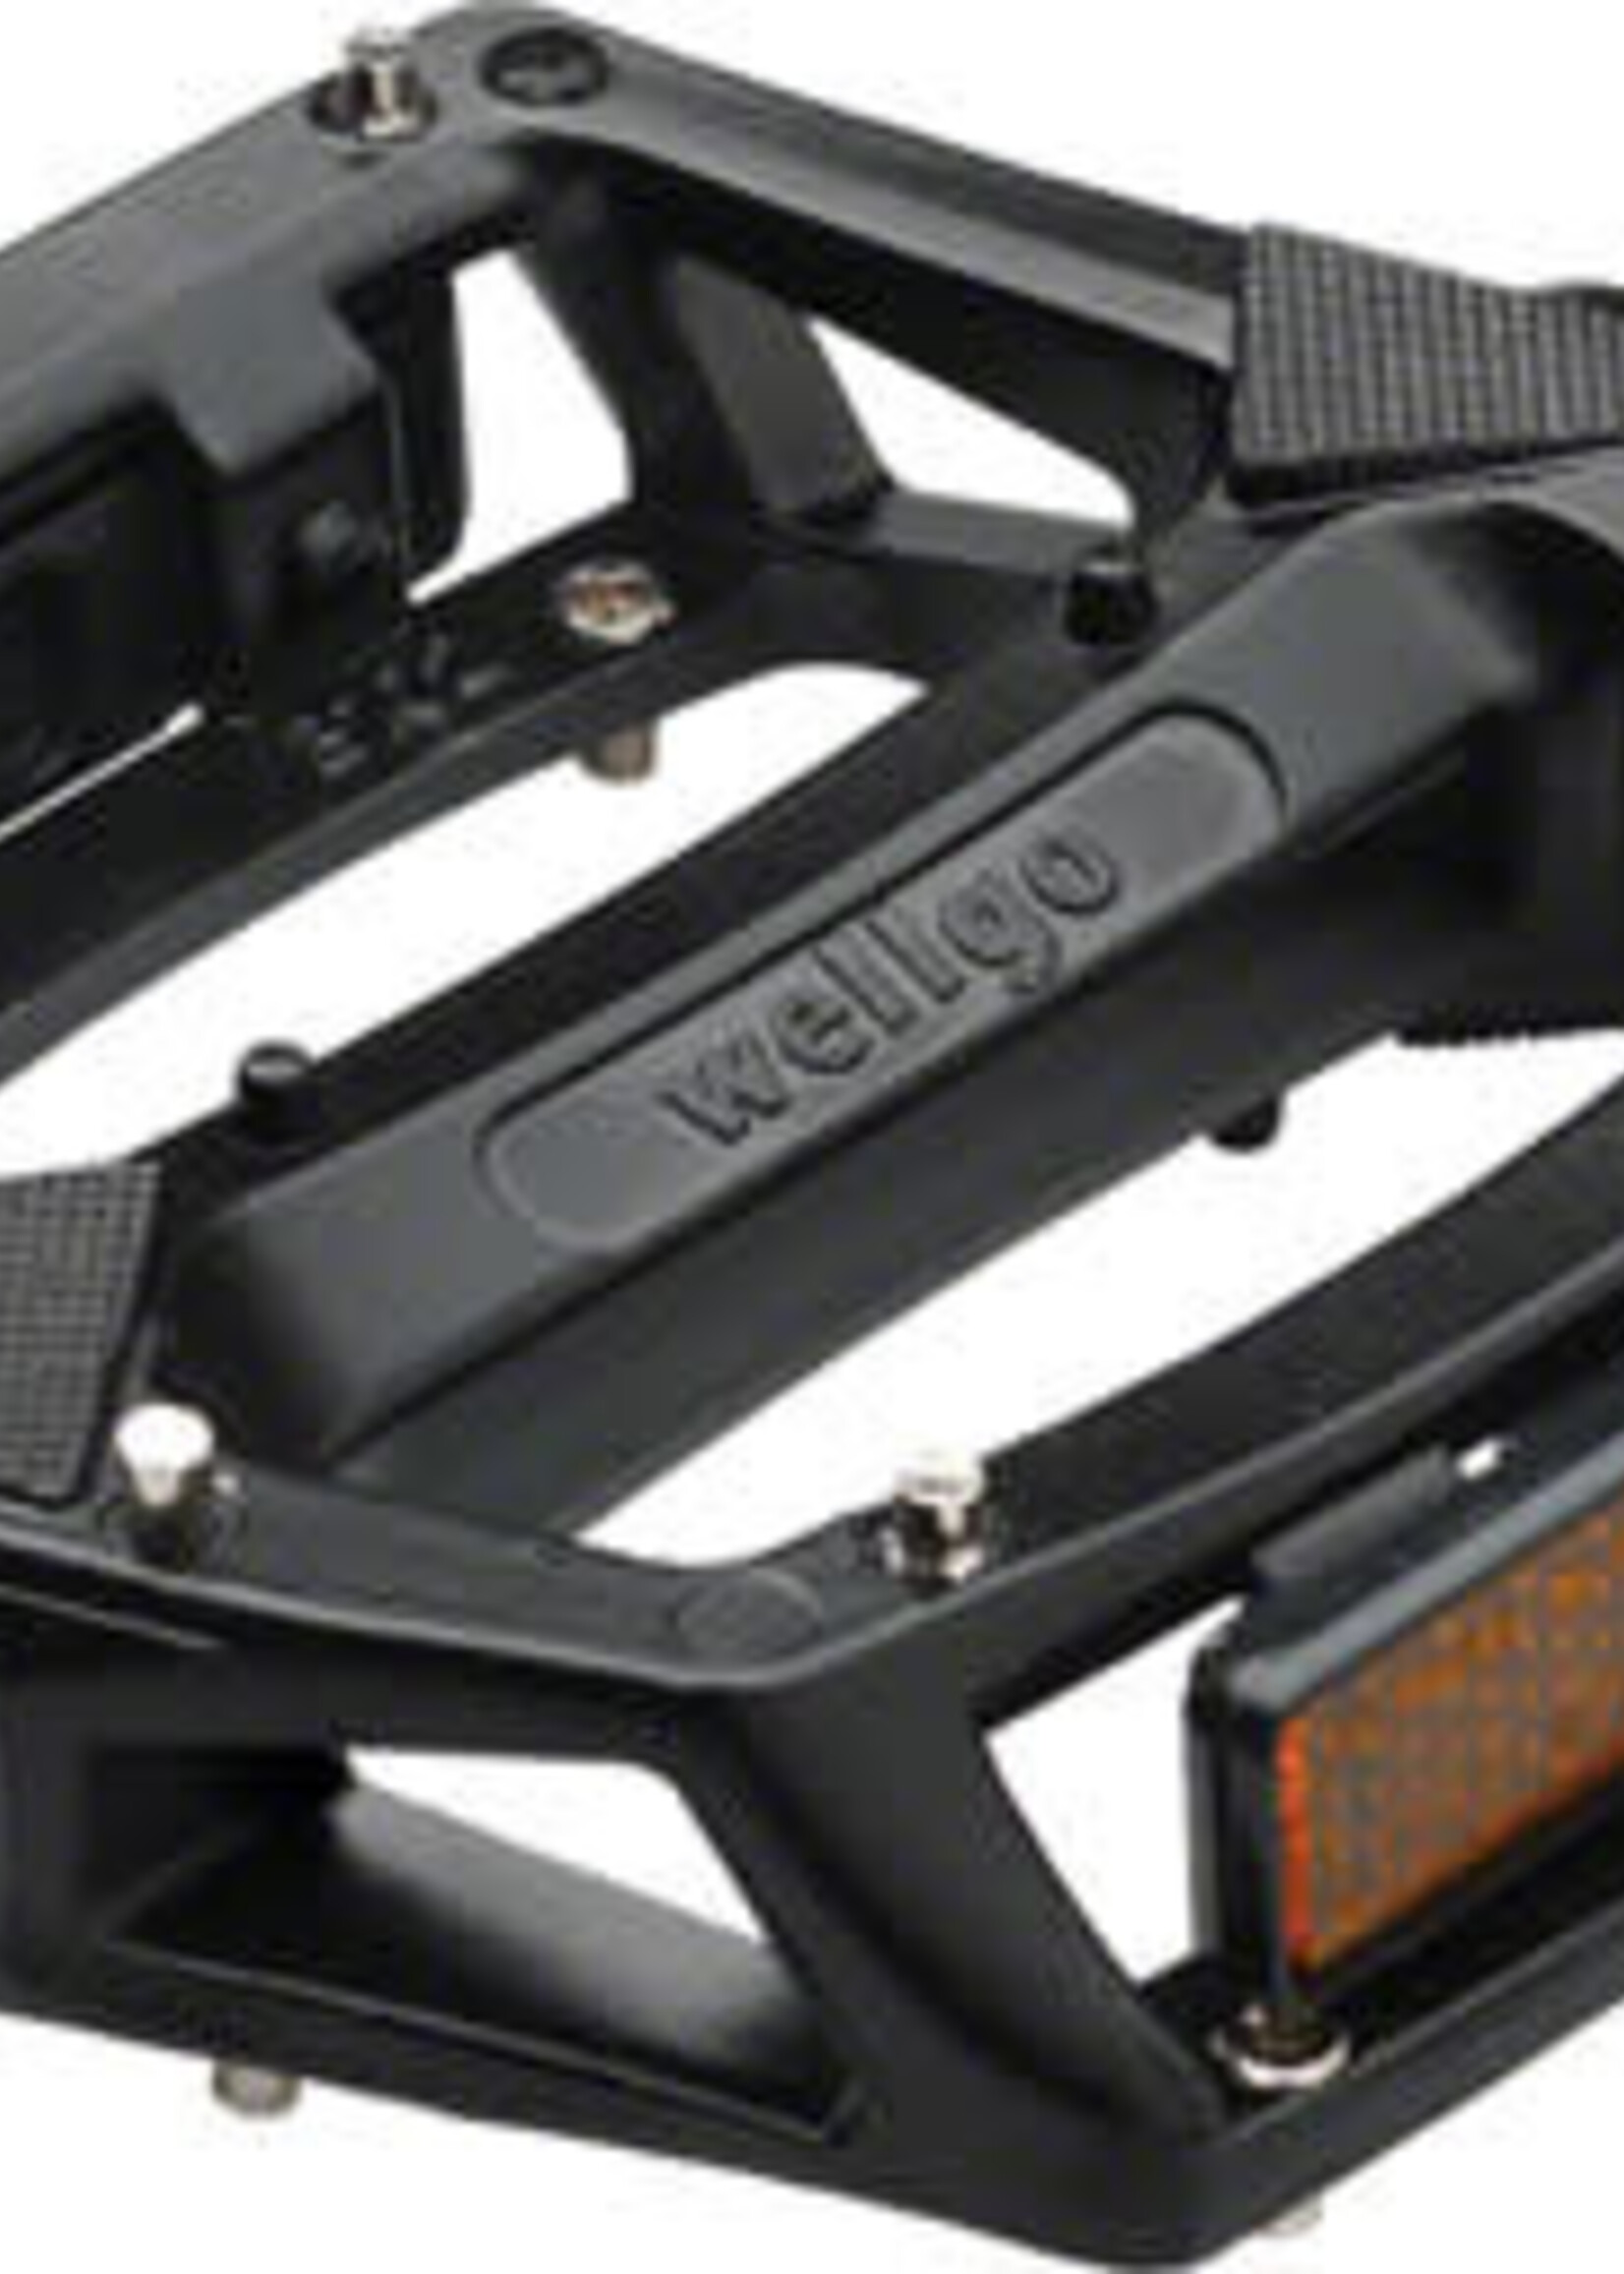 Wellgo Wellgo B087 Pedals - Platform, Aluminum, 9/16", Black